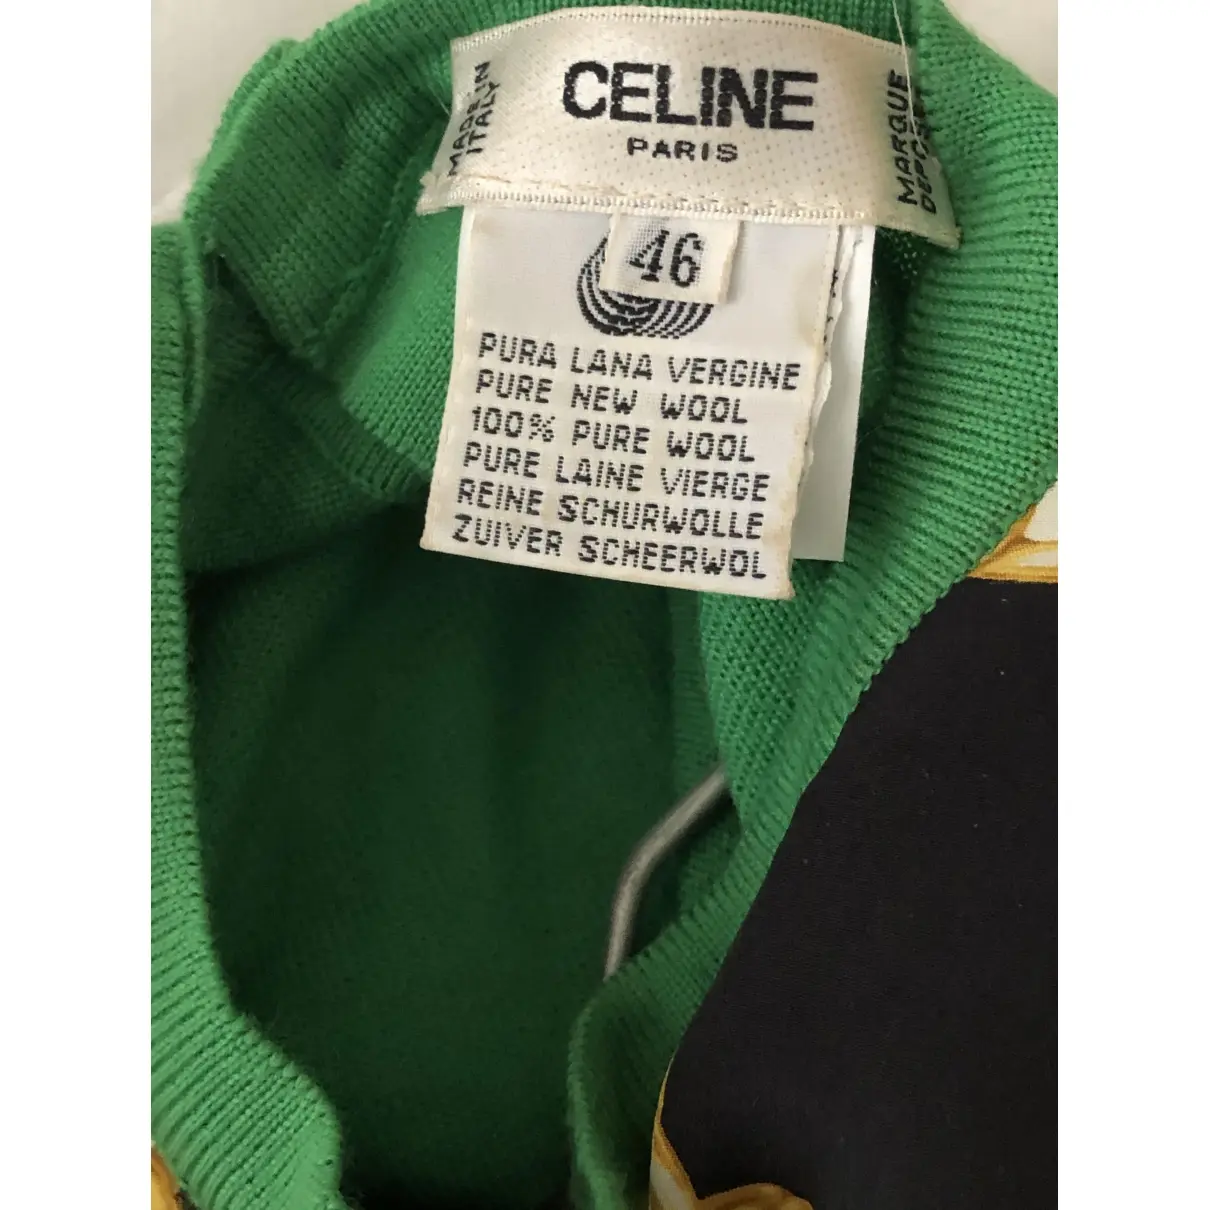 Buy Celine Wool top online - Vintage